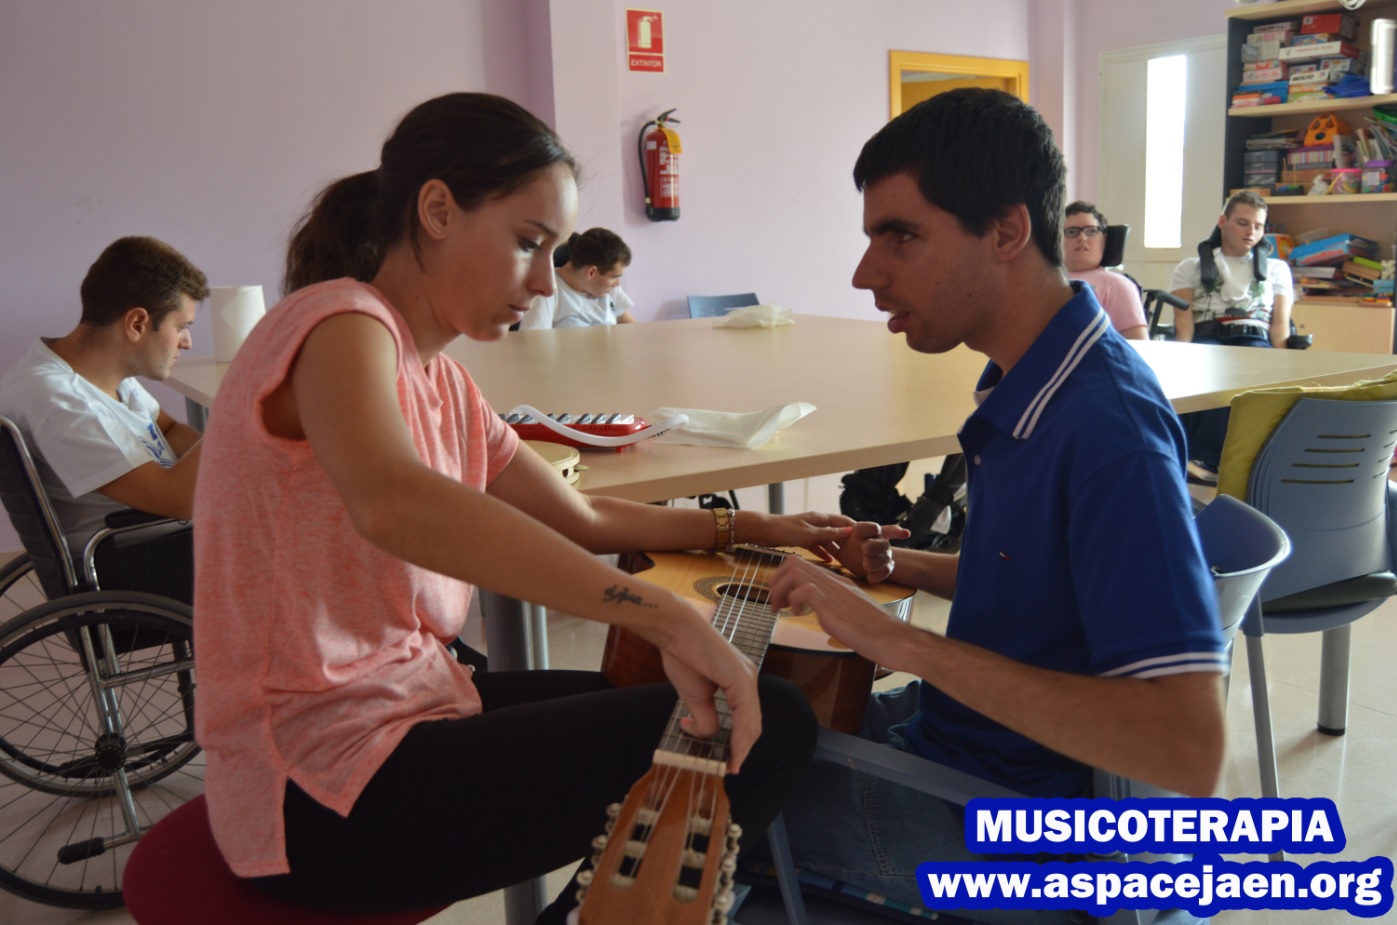 Musicoterapia a partir de septiembre en Aspace Jaén